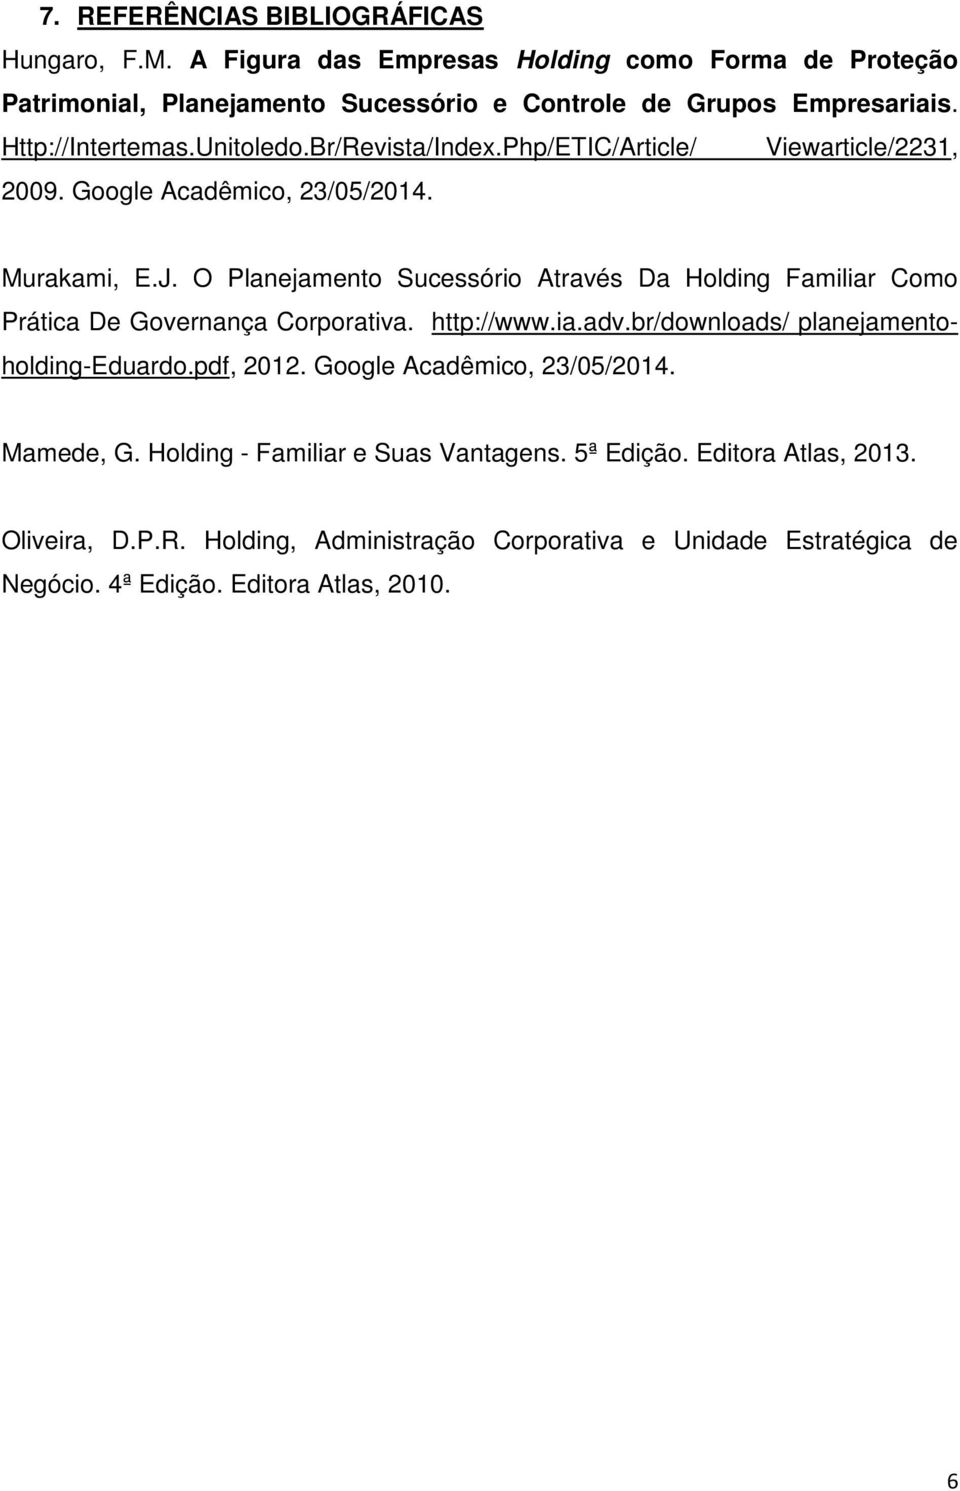 O Planejamento Sucessório Através Da Holding Familiar Como Prática De Governança Corporativa. http://www.ia.adv.br/downloads/ planejamentoholding-eduardo.pdf, 2012.